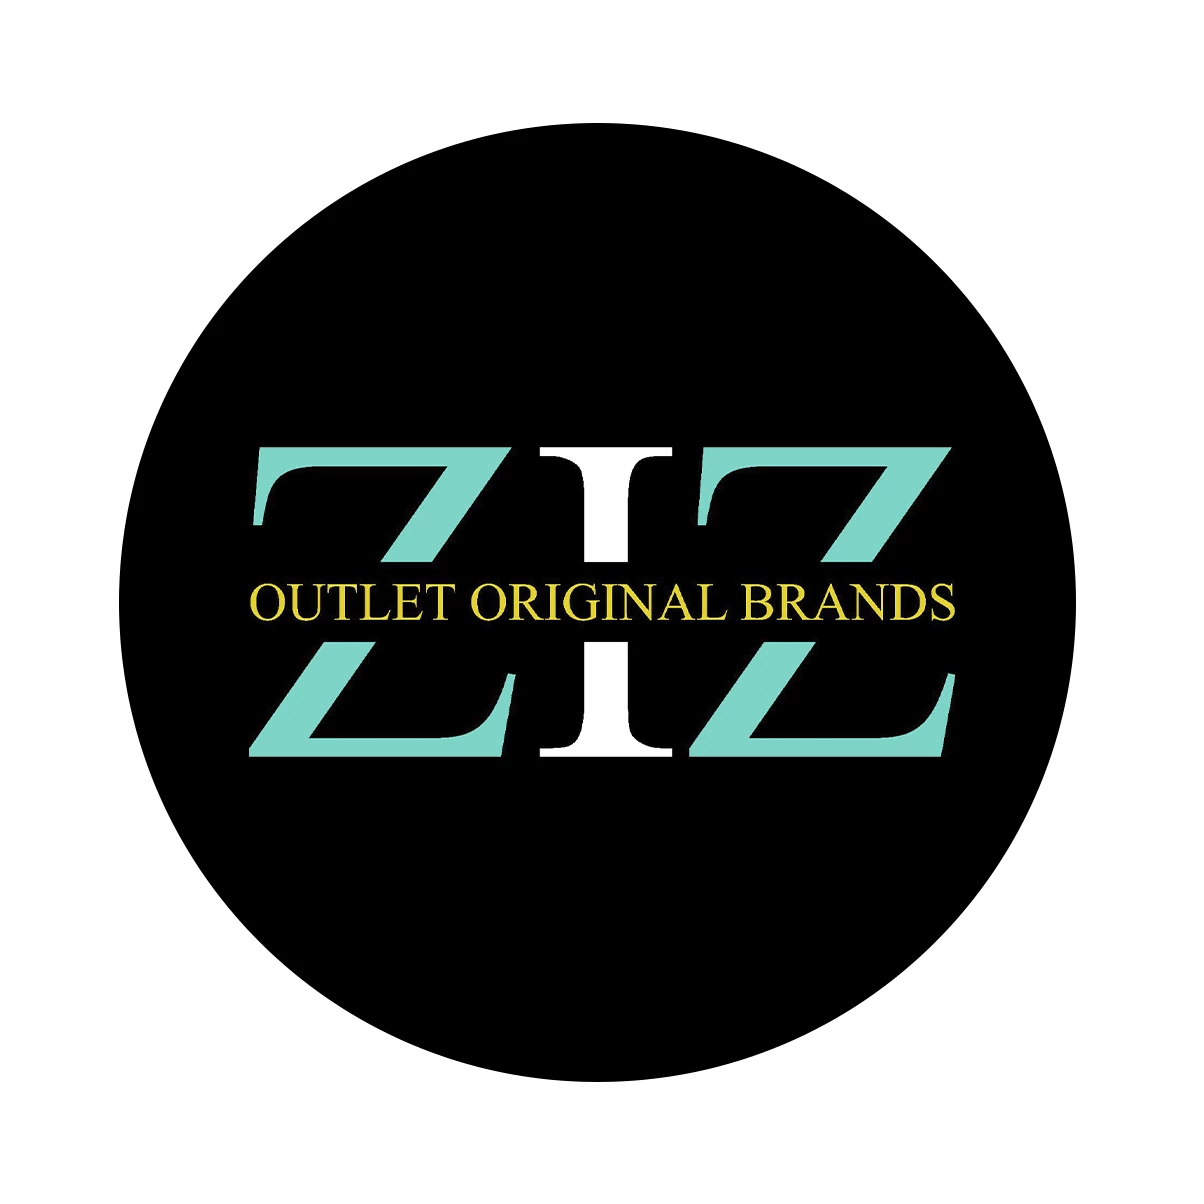 Ziz Outlet Original Brands